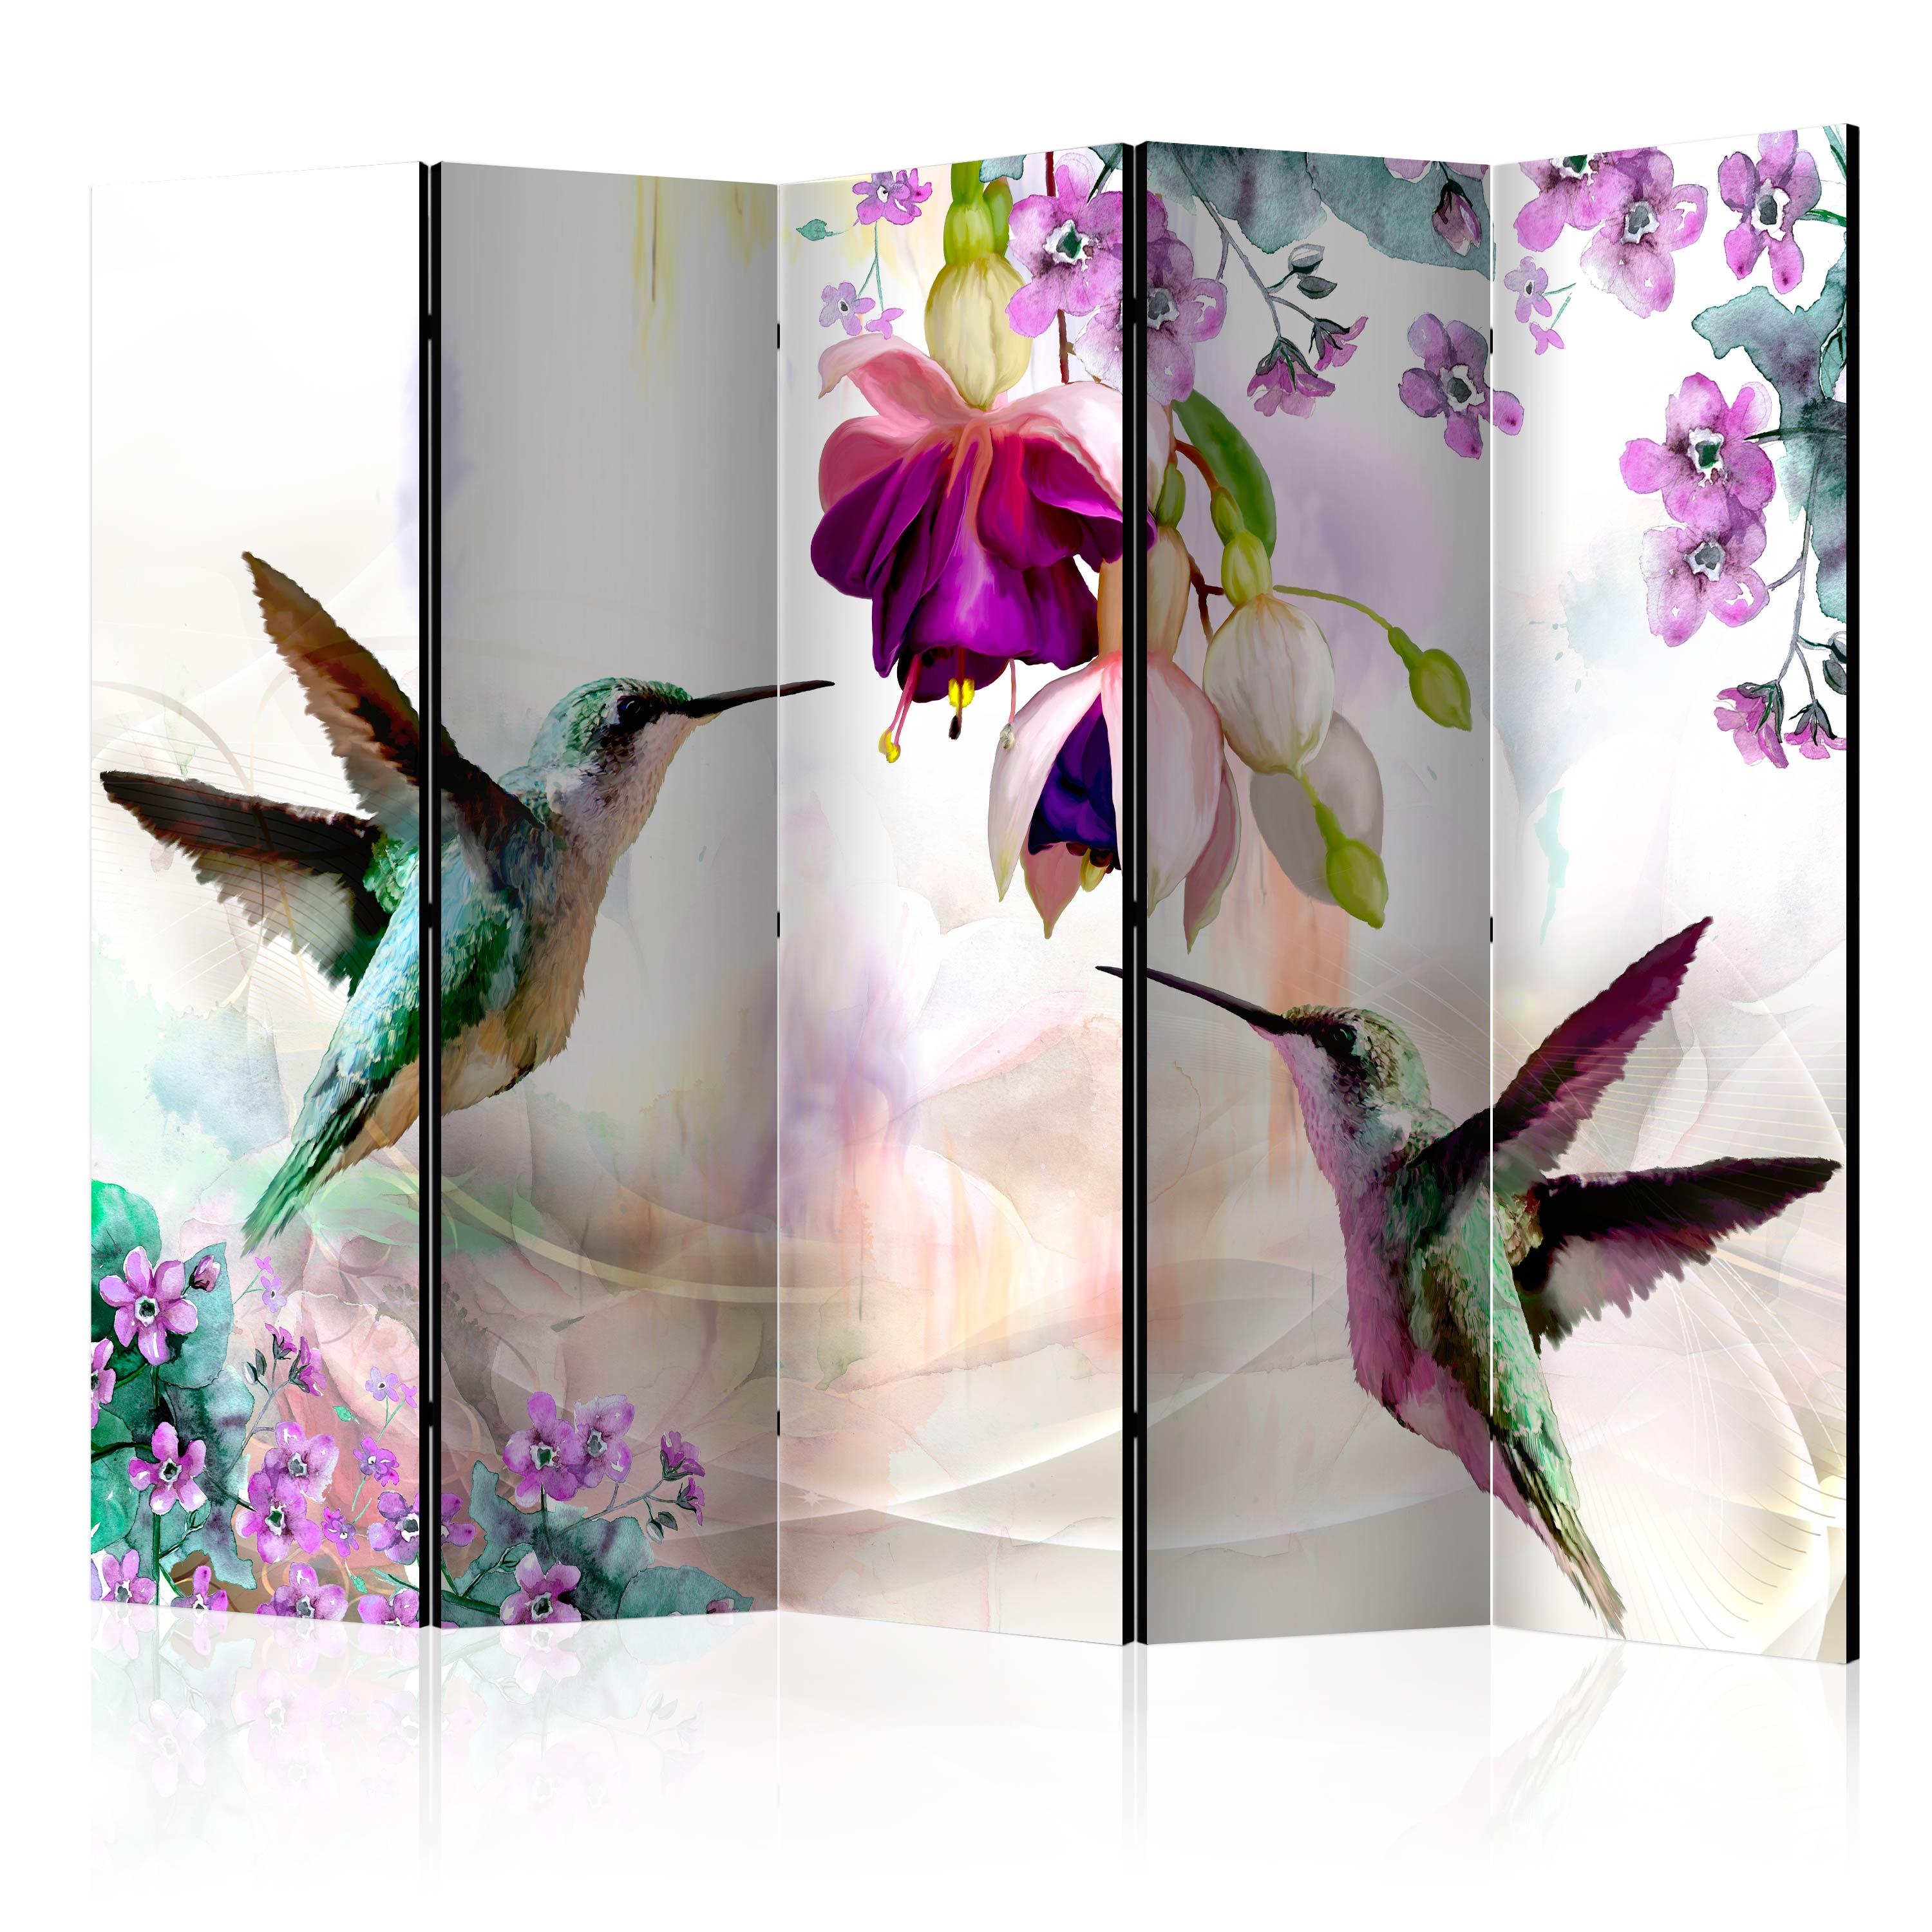 Deko Paravent Raumteiler Trennwand Spanische Wand Kolibri Vogel Blumen 2 Formate